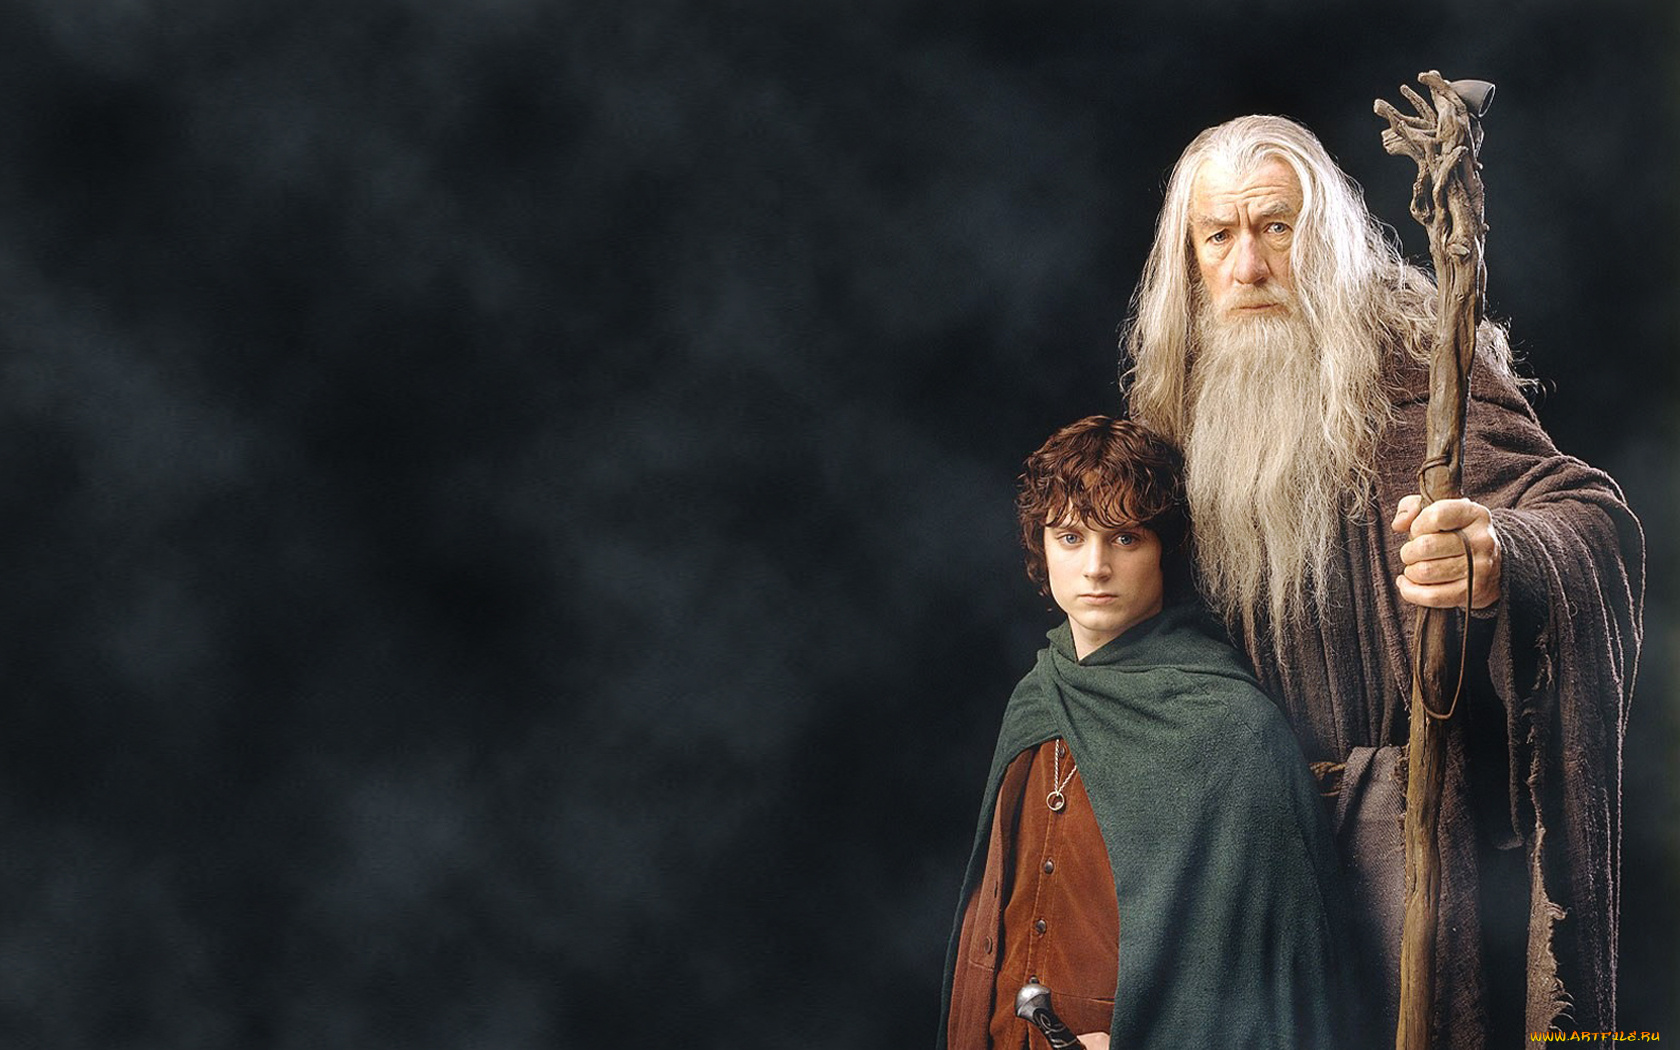 Властелин колец возраст. Властелин колец братство кольца Гэндальф. Иэн МАККЕЛЛЕН Властелин колец братство кольца. Гэндальф Фродо Арагорн. Гэндальф и Фродо.